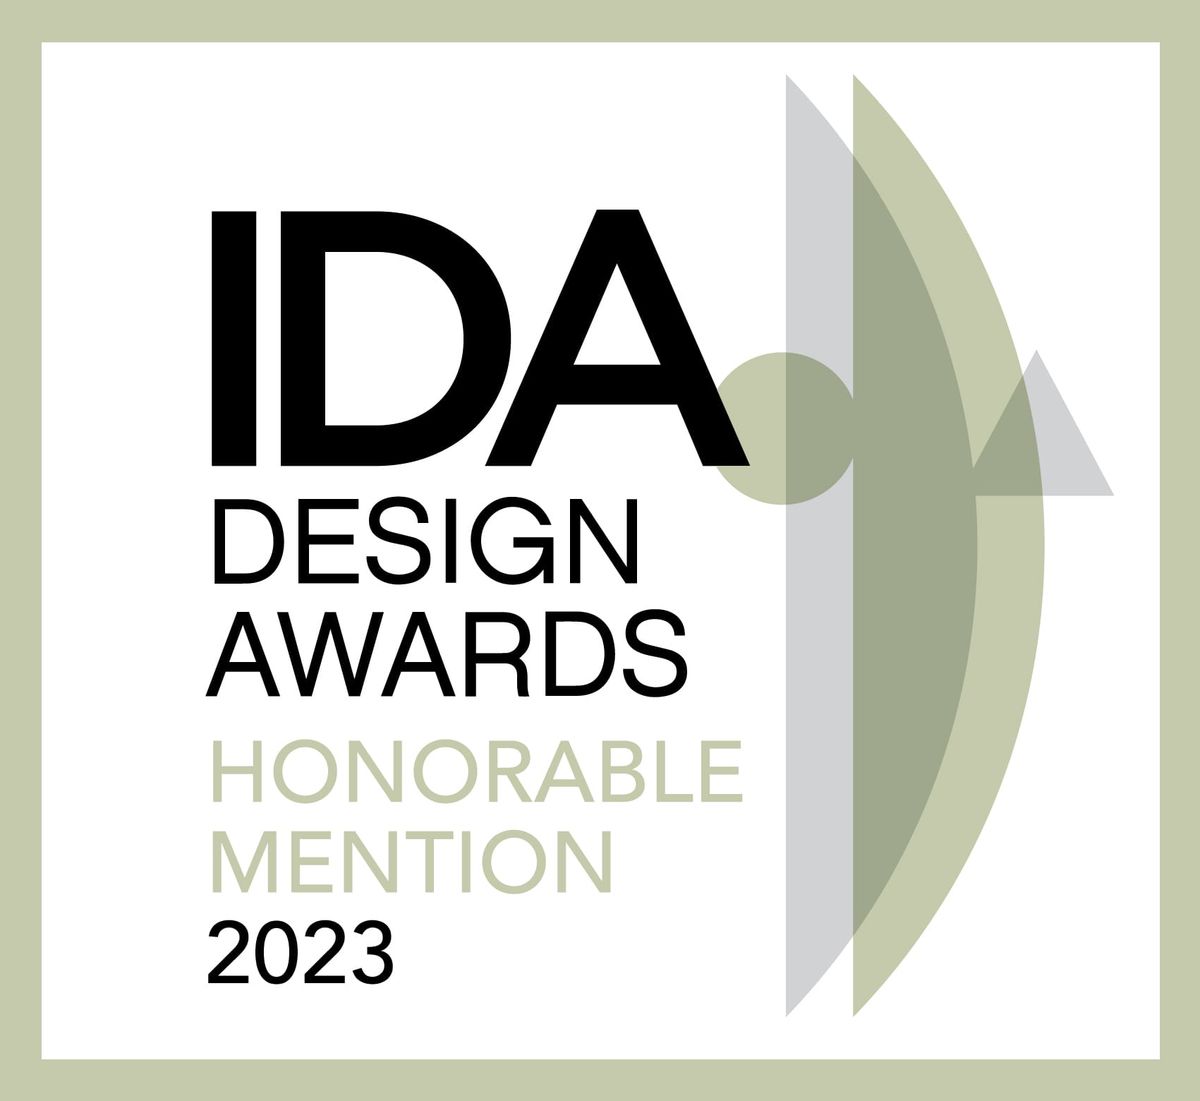 美國國際設計大獎；IDA；International Design Awards；國際獎項；美國；邱德光設計；室內設計；空間設計；住宅空間